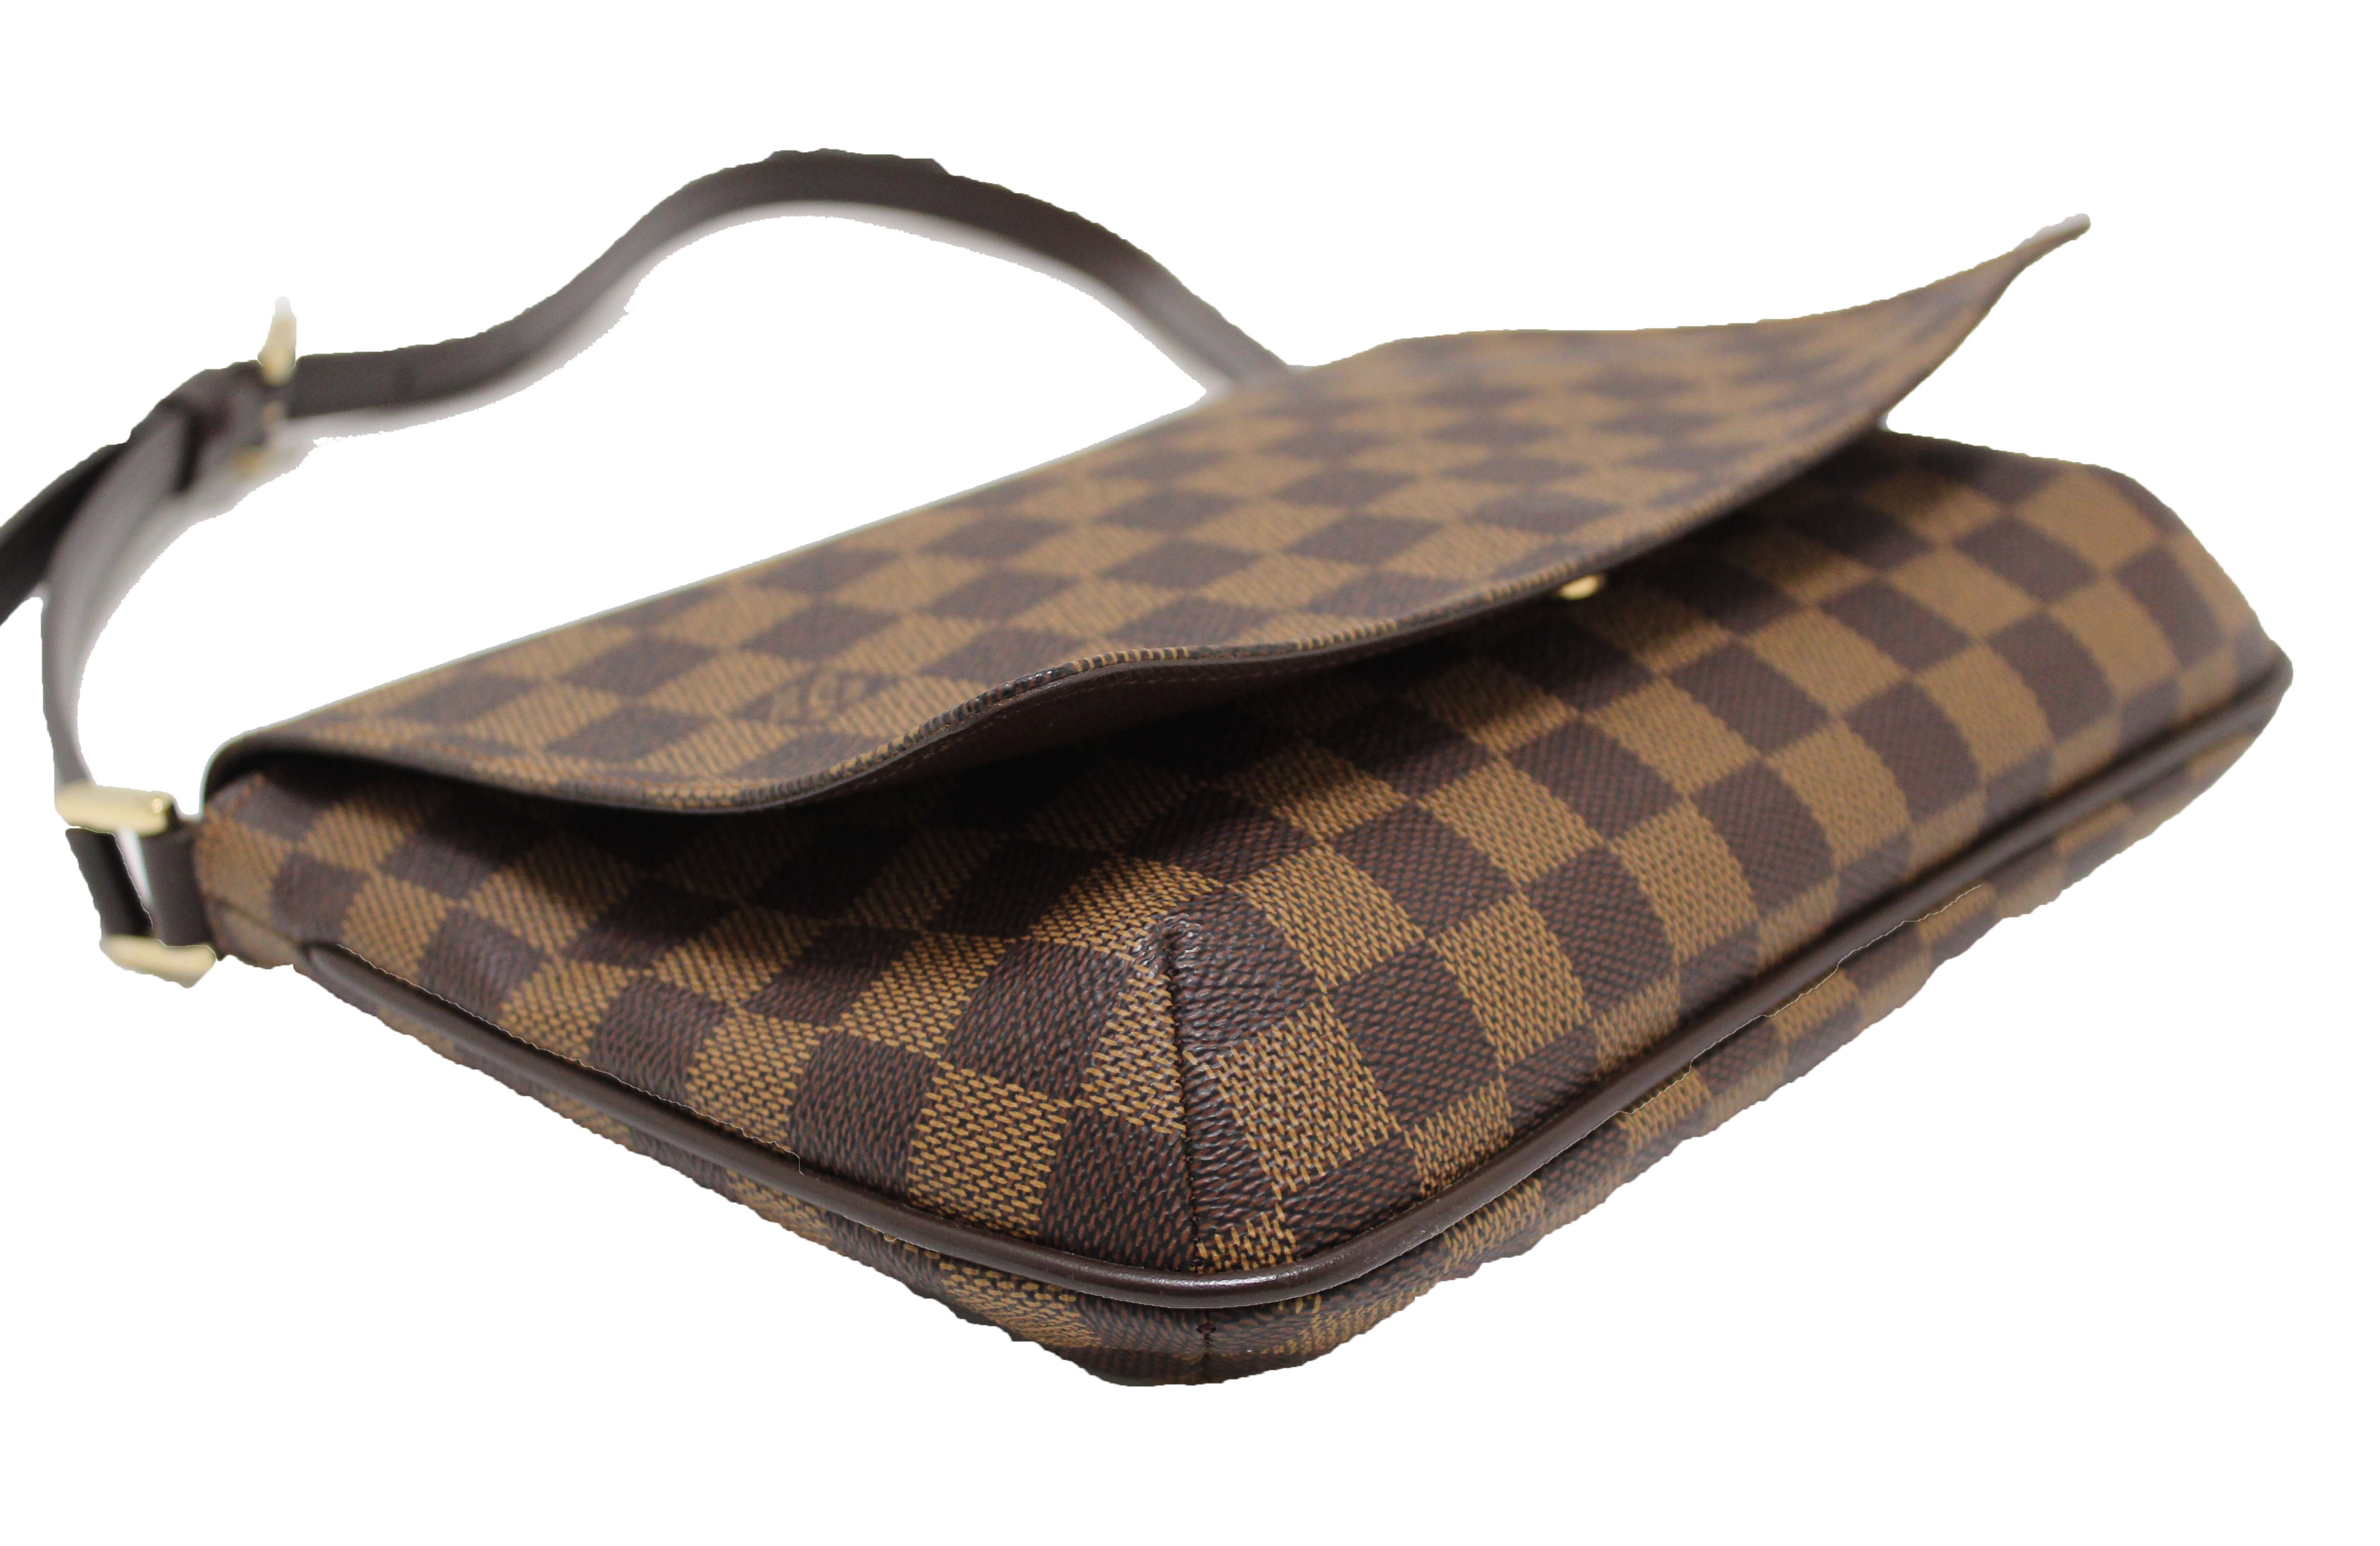 Authentic Louis Vuitton Damier Ebene Musette Tango Shoulder Bag